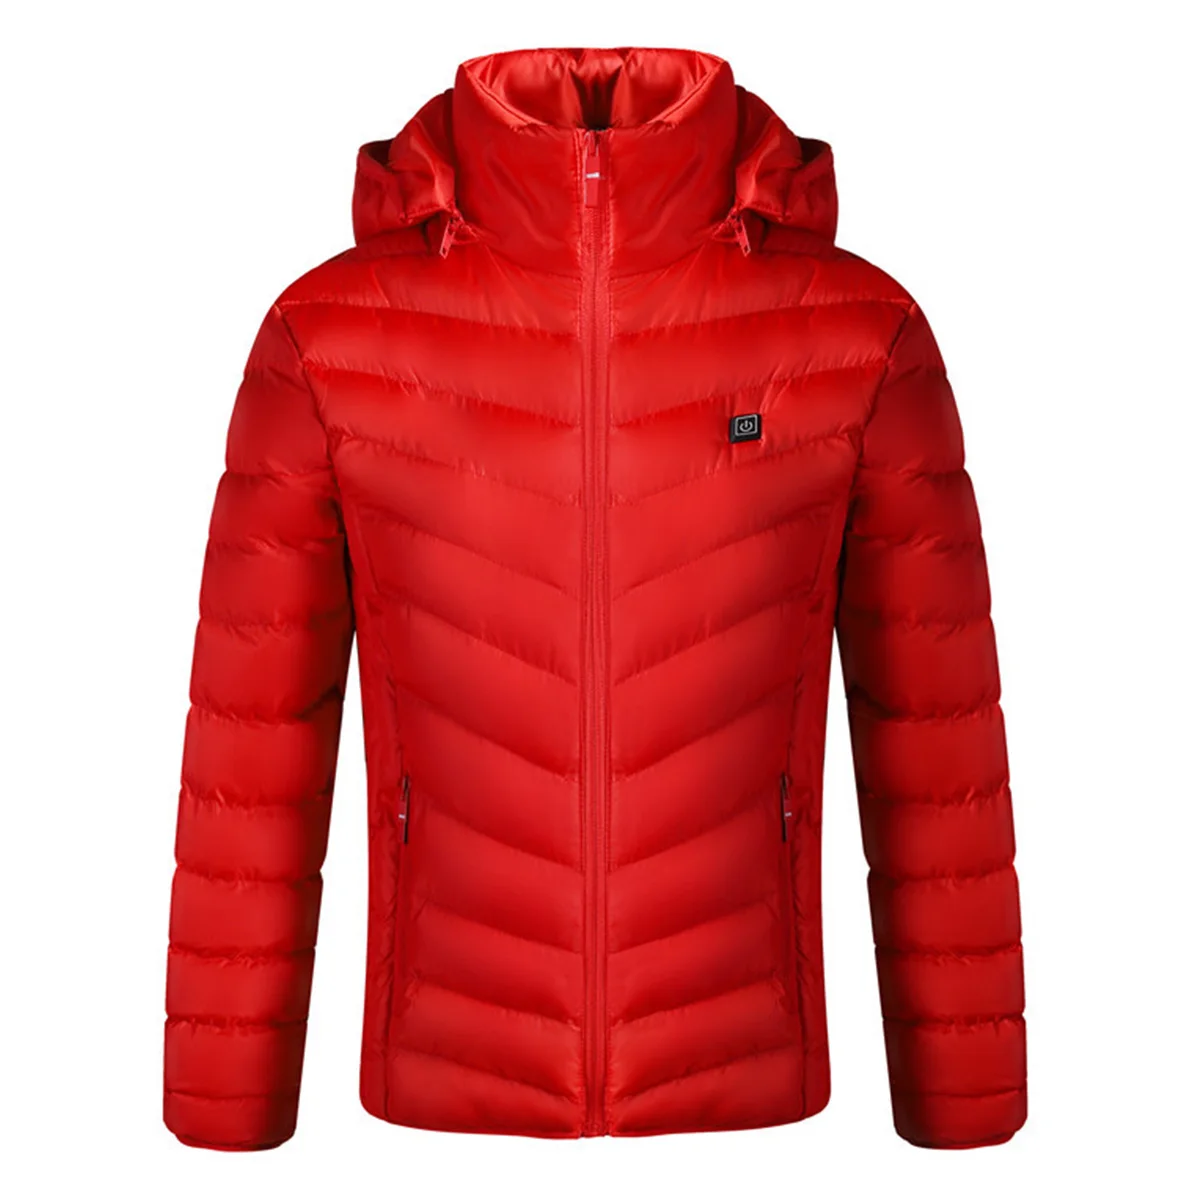 S-4XL зимняя USB Инфракрасная куртка с подогревом для мужчин и женщин тонкий пуховик водонепроницаемый, с длинными рукавами с капюшоном теплая одежда для пеших прогулок на лыжах - Цвет: Красный